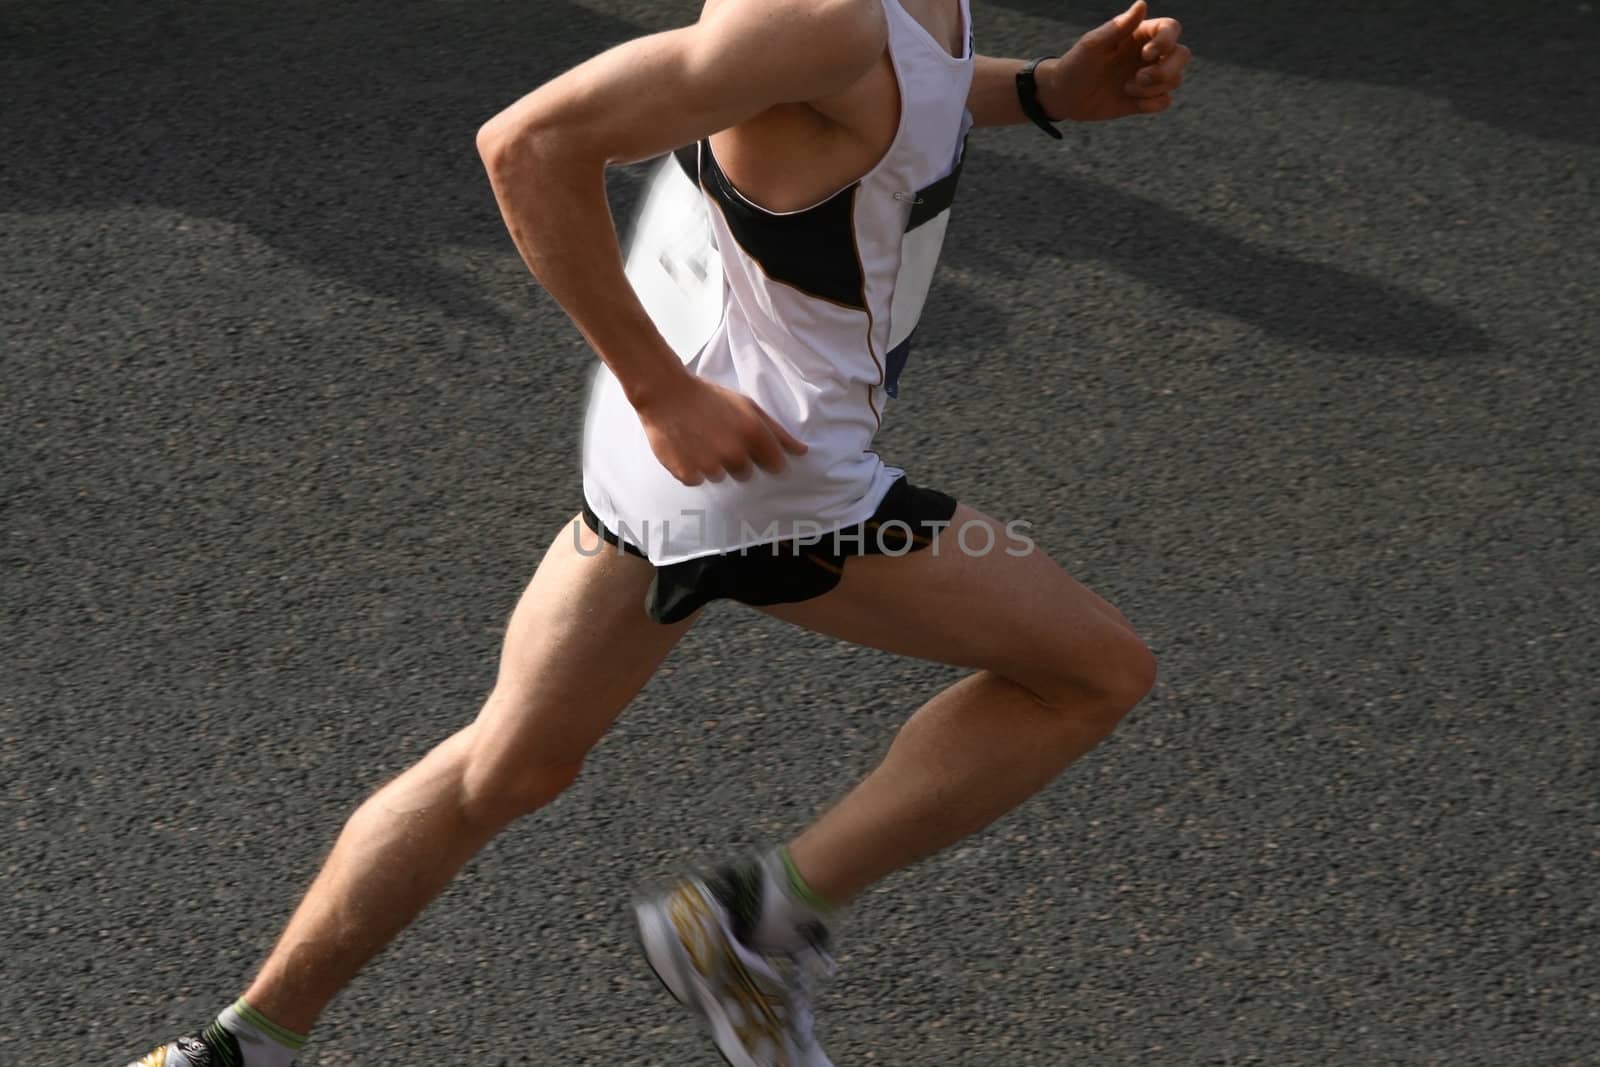 athlete running a marathon